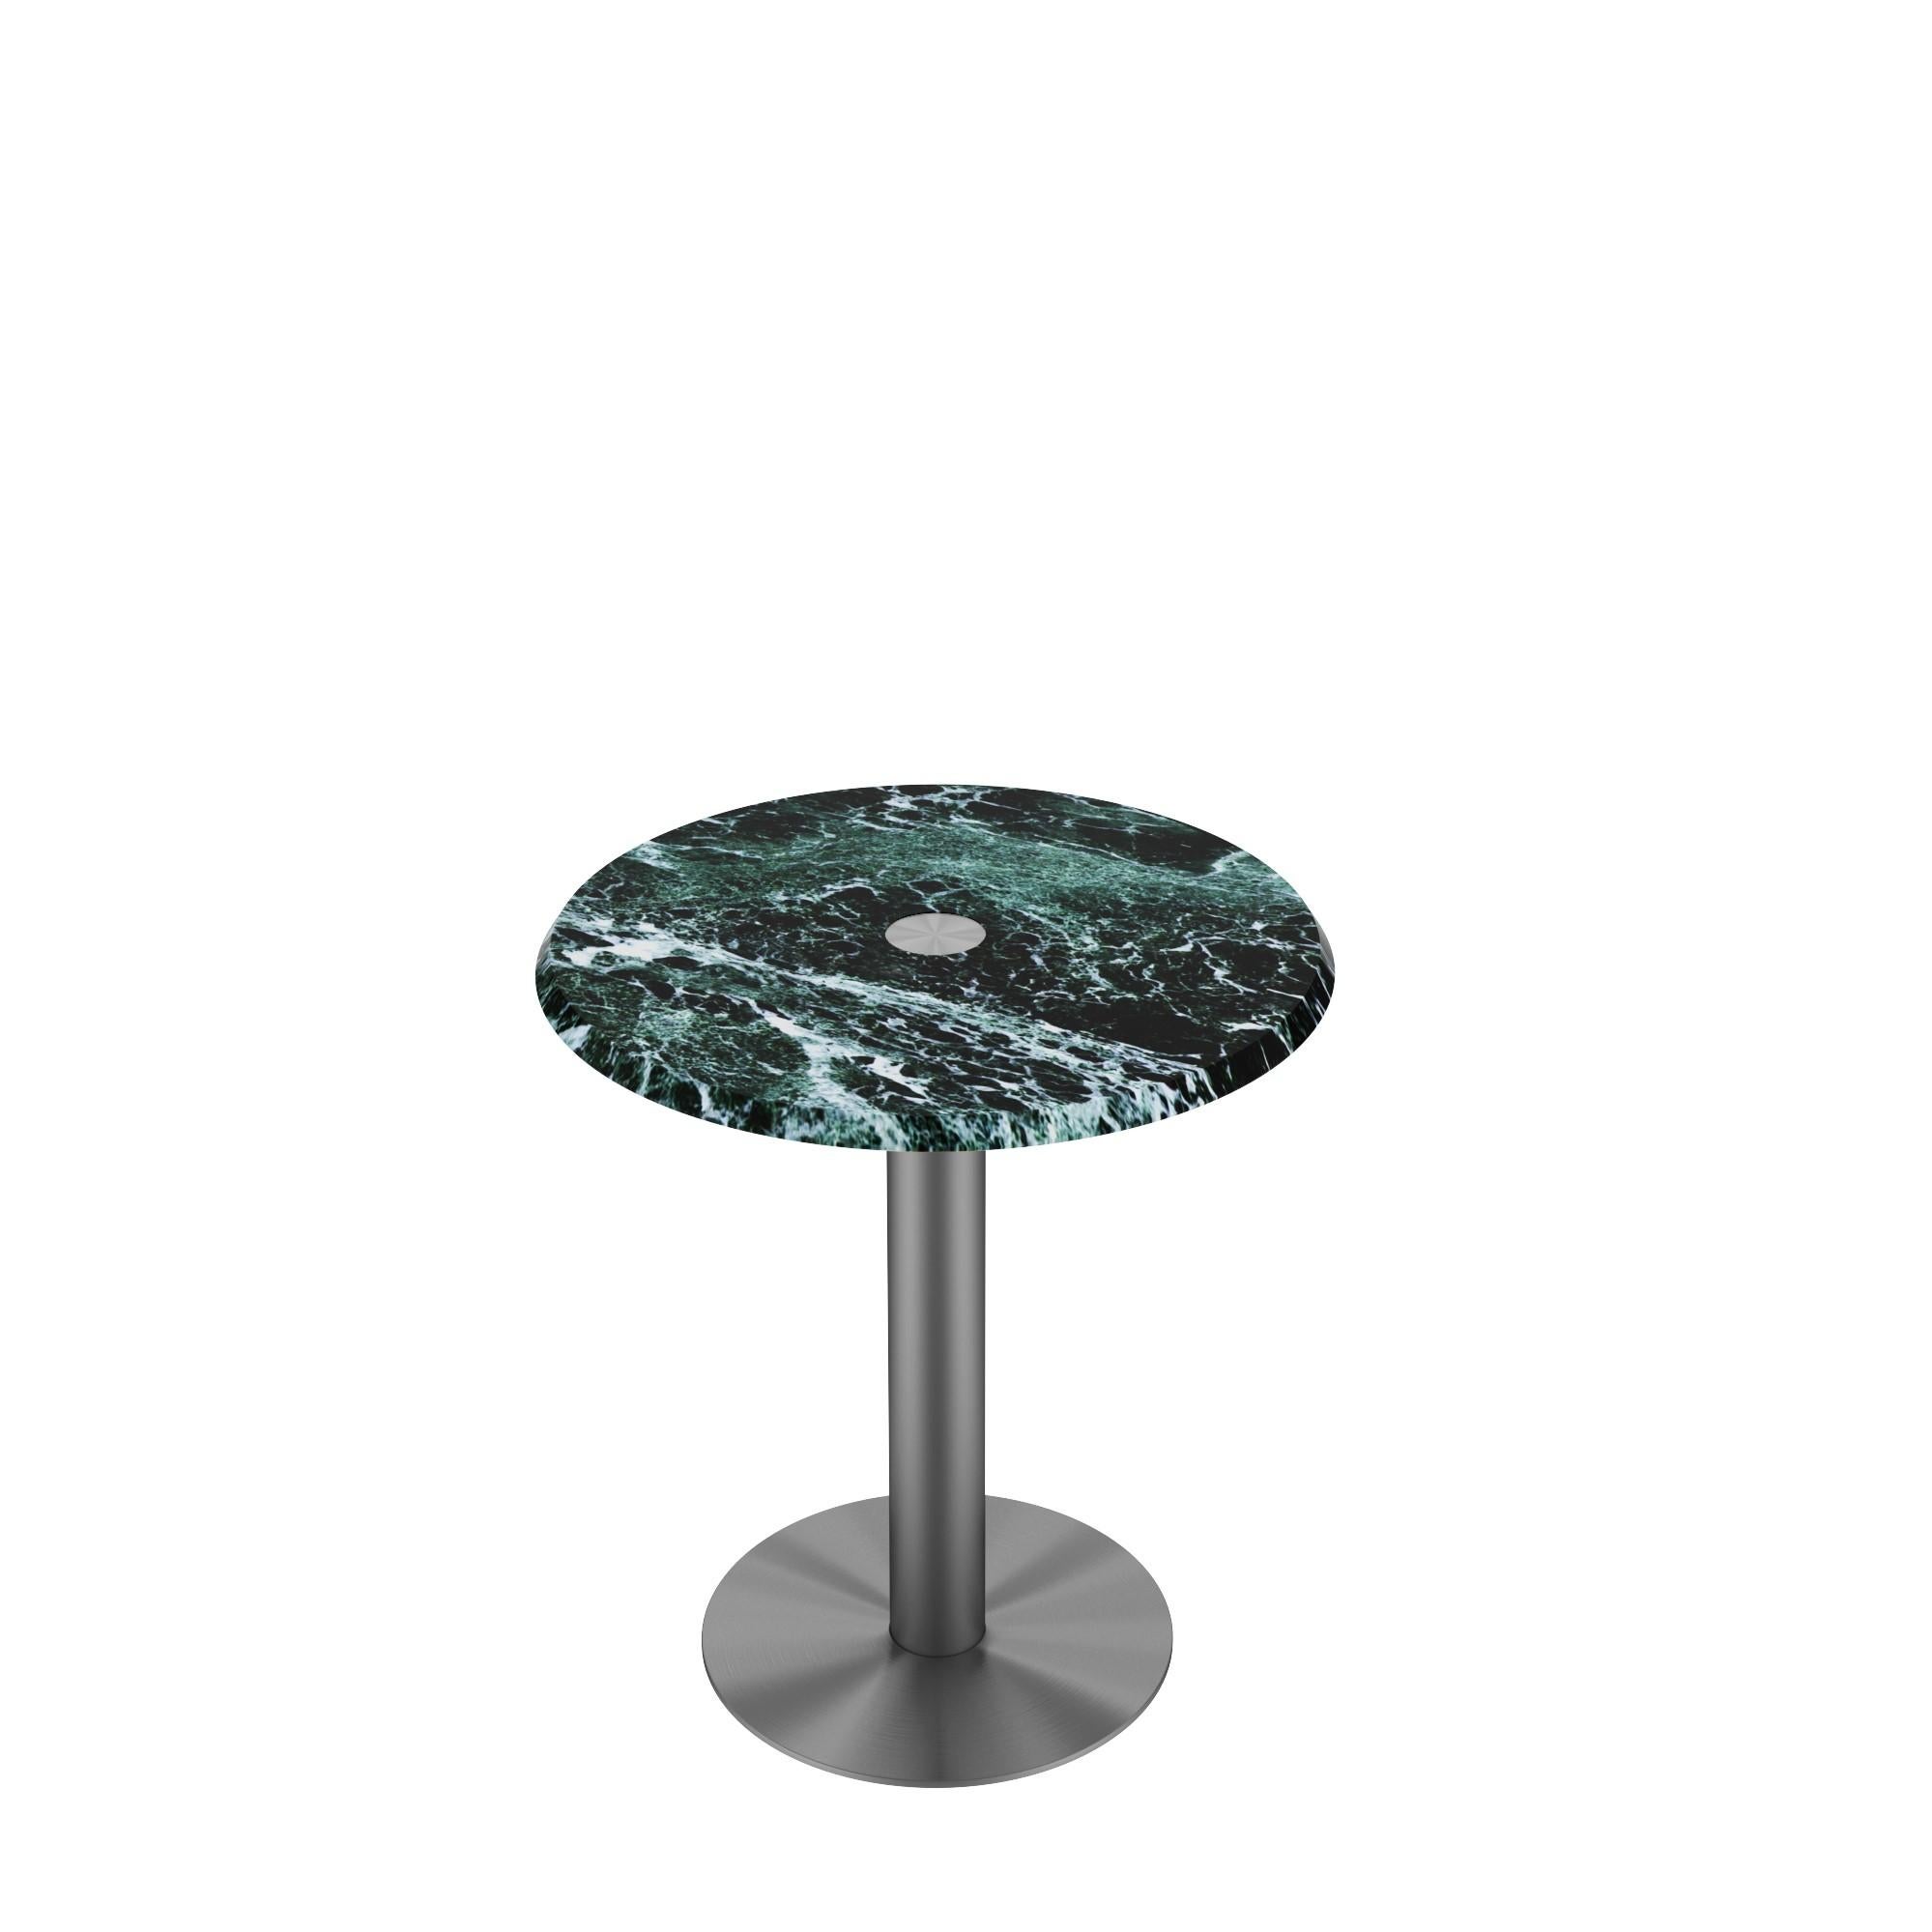 Scandinavian Modern NORDST LEA Side Table, Italian White Mountain Marble, Danish Modern Design, New For Sale